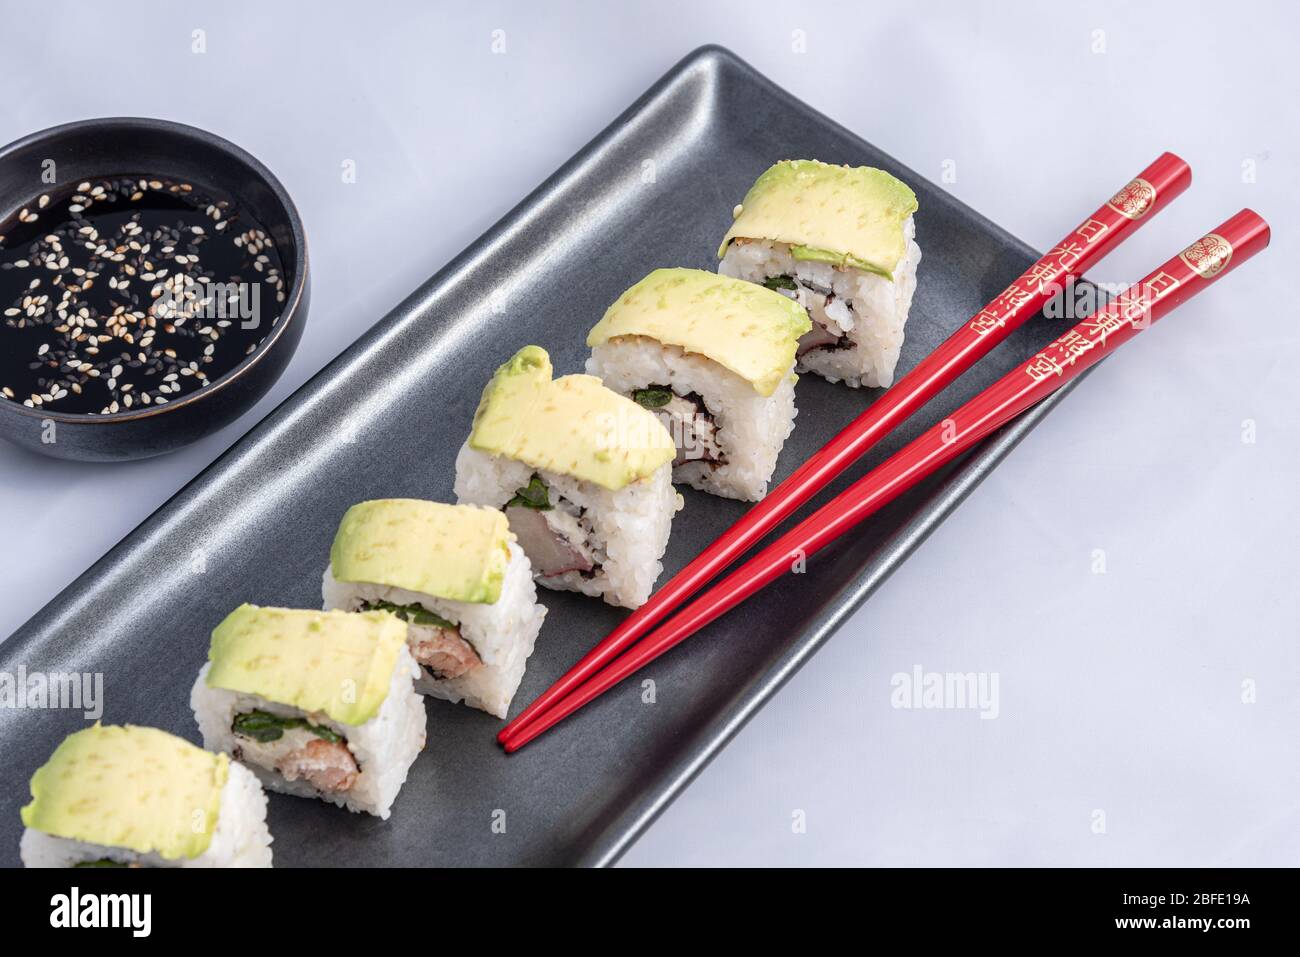 Rotolo di sushi con wrap avocado, salmone alla griglia, formaggio philadelphia e cipolle verdi contenitore nero e bacchette rosse. Foto Stock